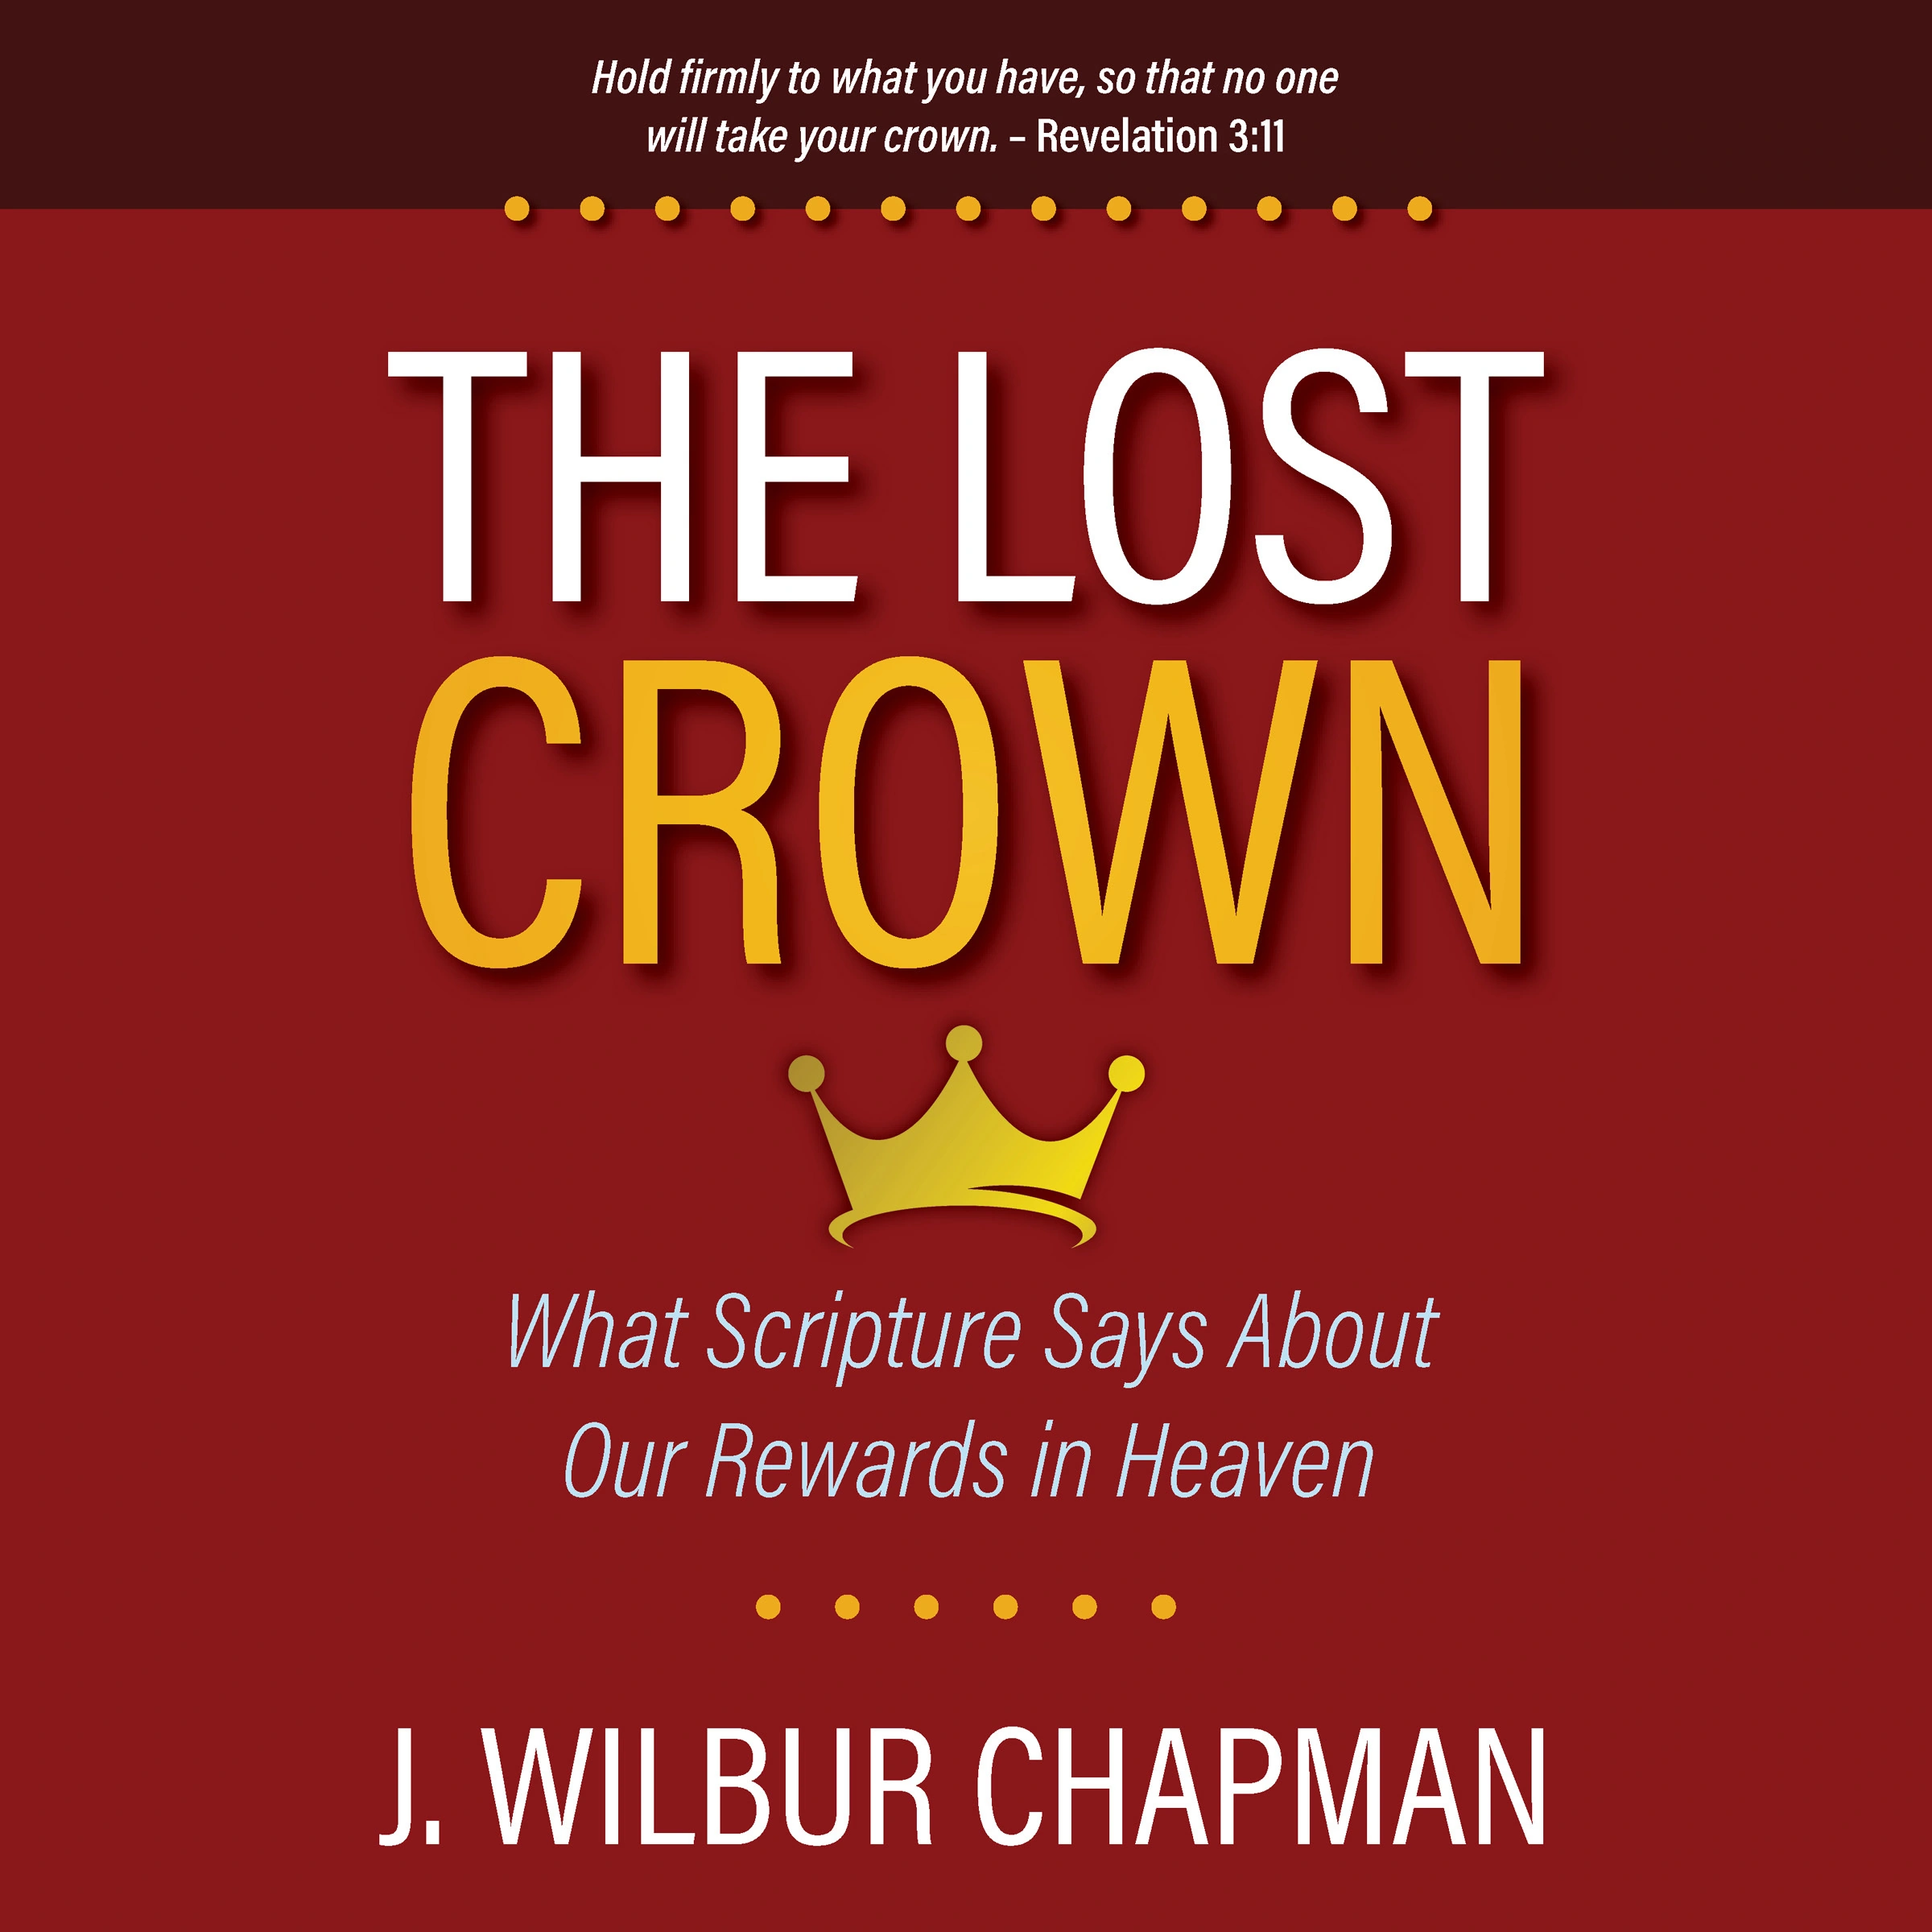 The Lost Crown Audiobook by J. Wilbur Chapman